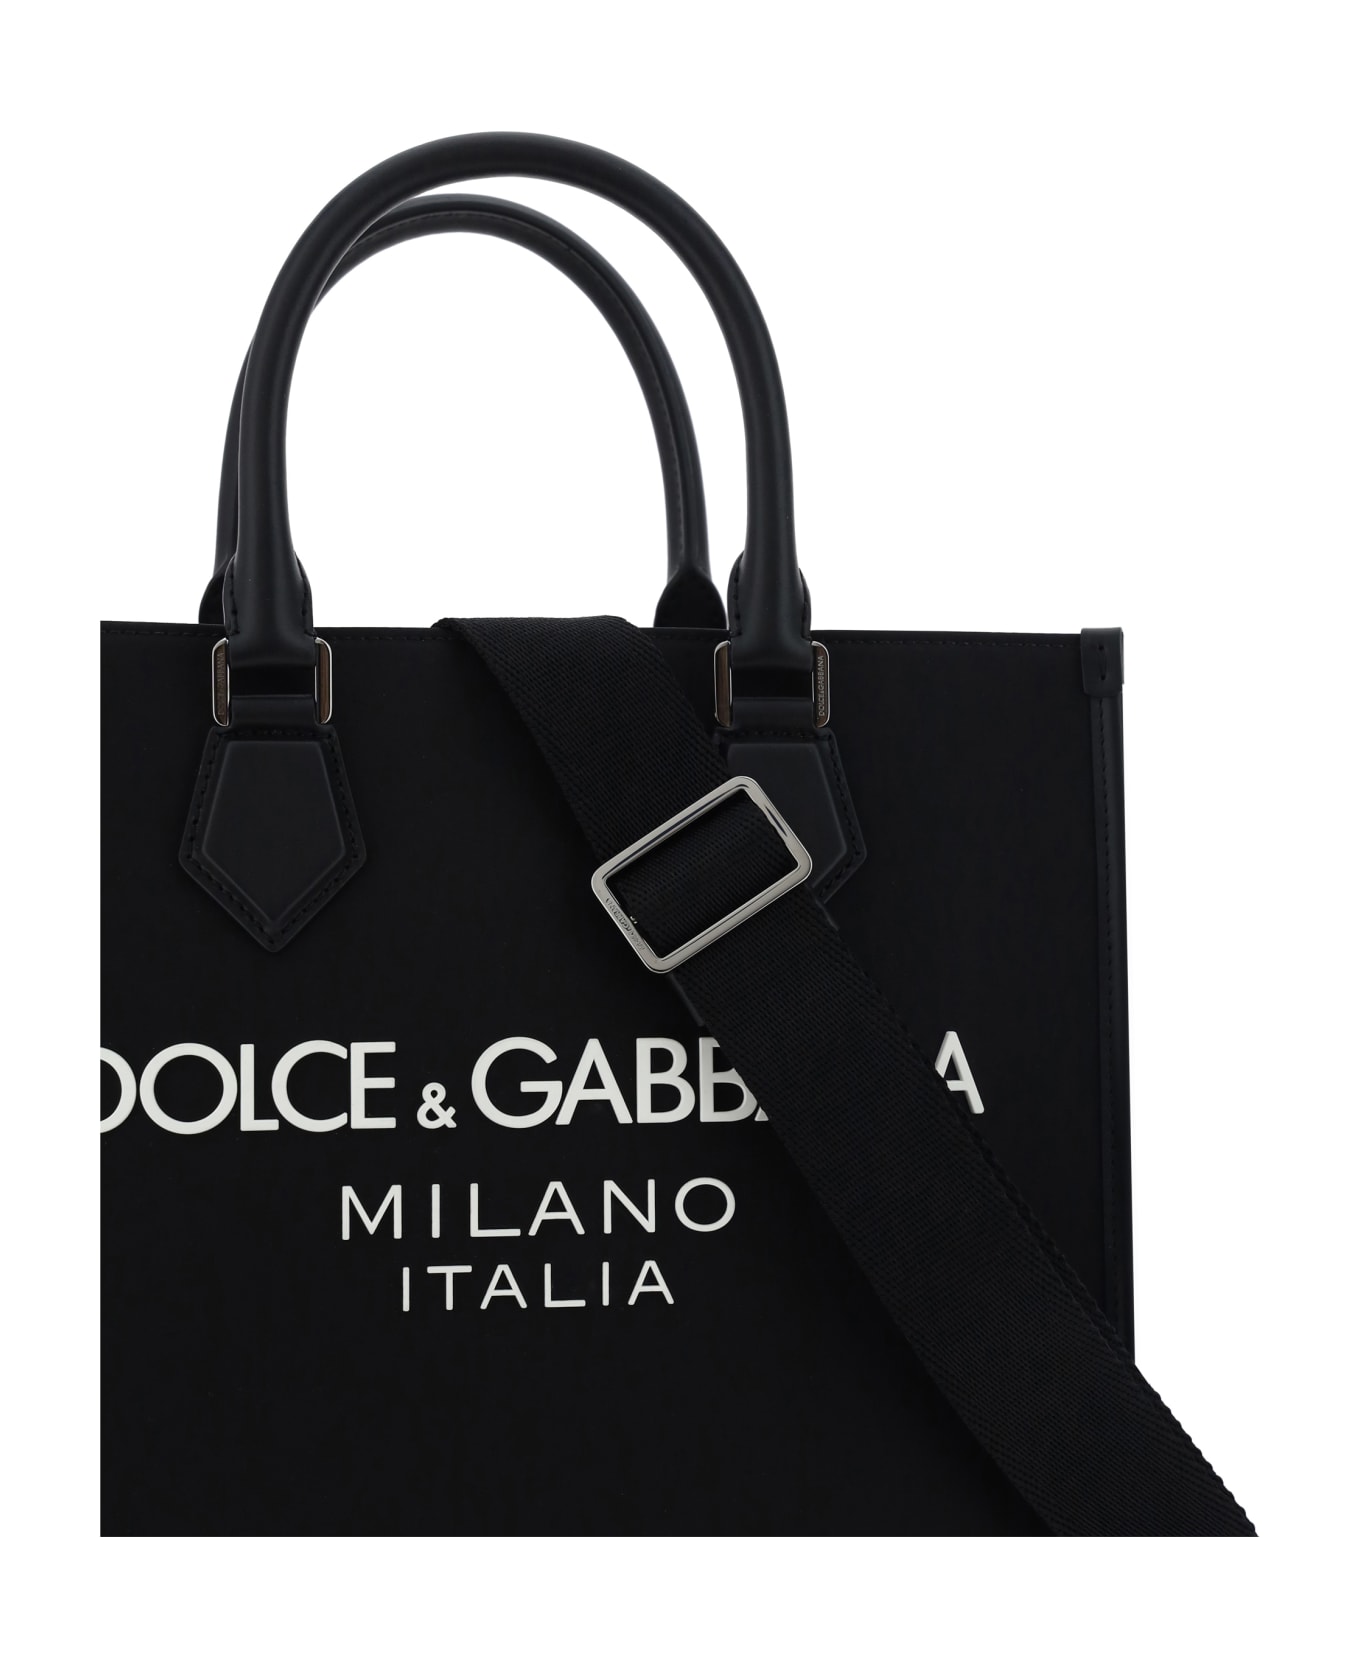 Dolce & Gabbana Nylon Small Tote Bag - Nero/nero